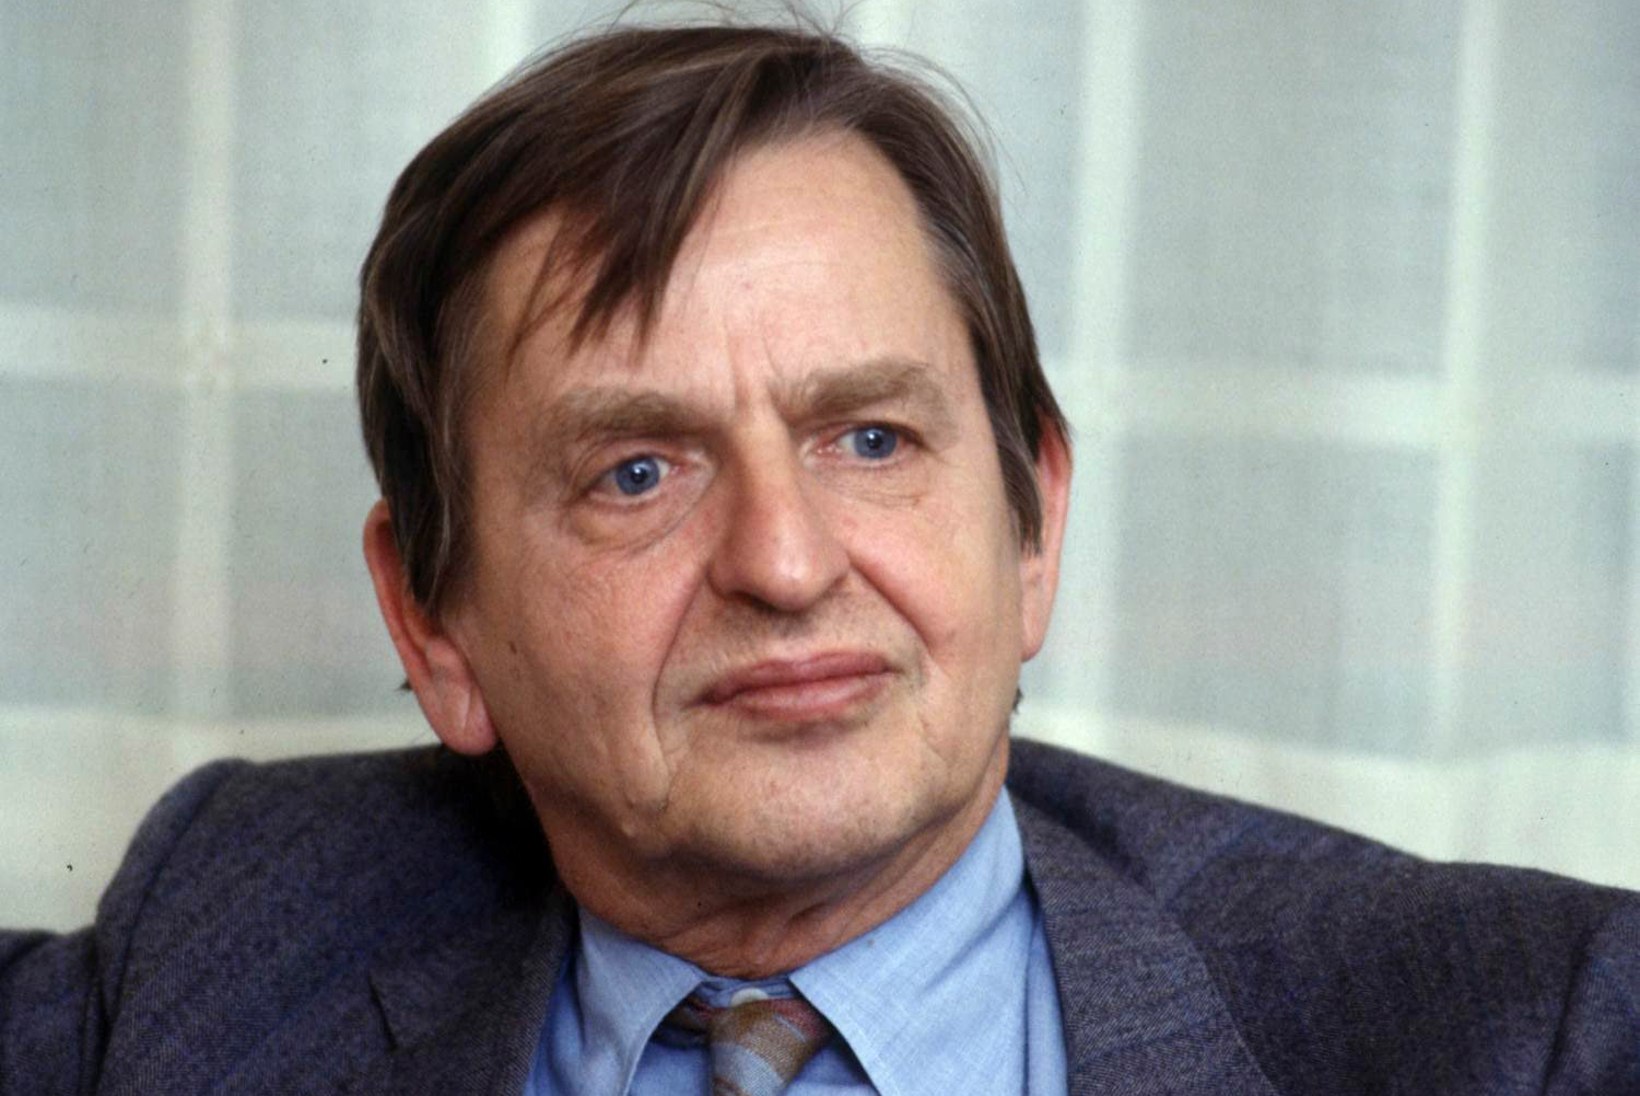 UURIMINE LÕPETATI! Rootsi võimud on seisukohal, et Olof Palme tappis 20 aastat tagasi surnud kahtlusalune